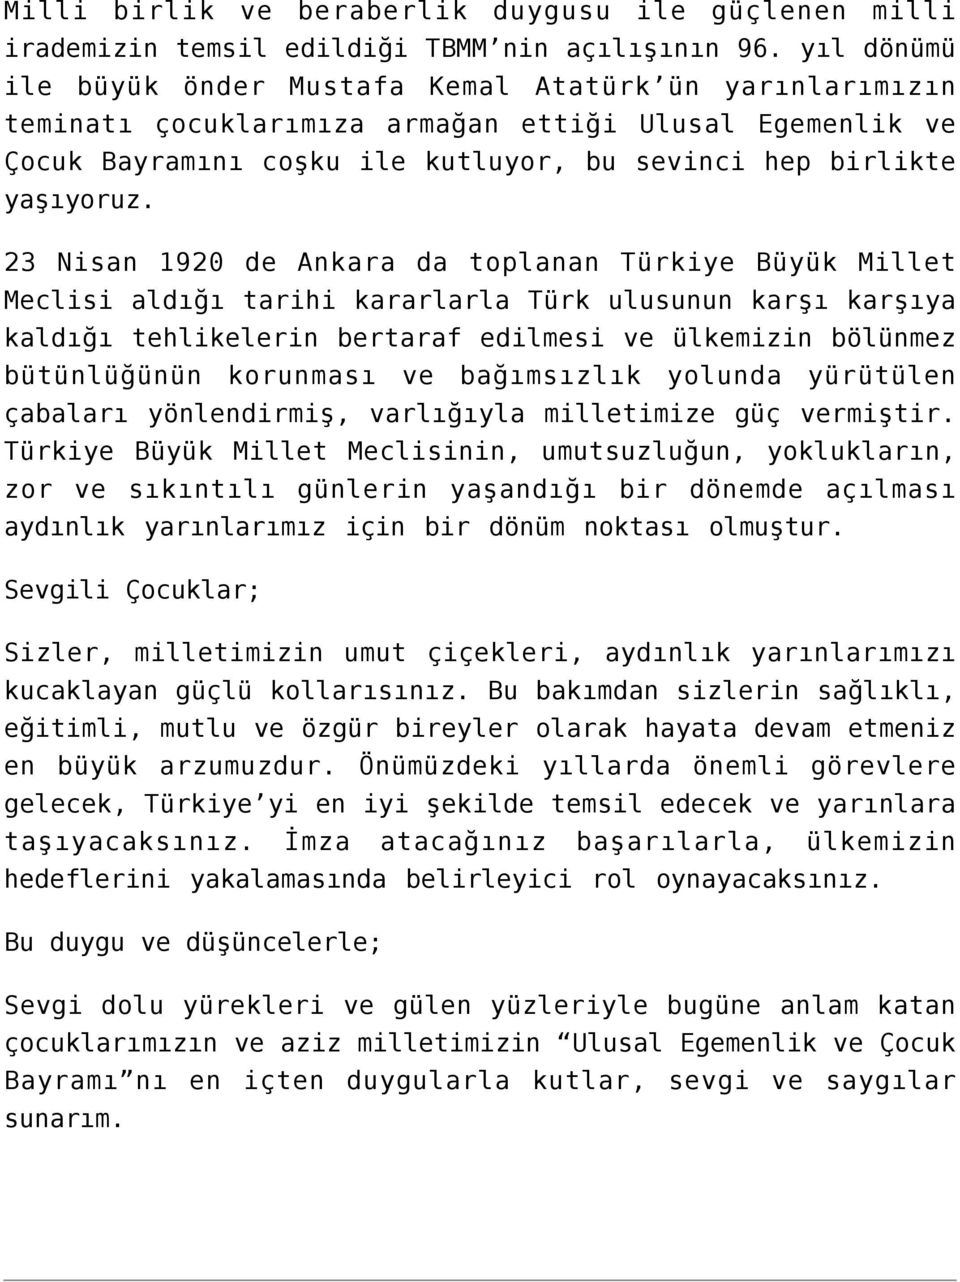 23 Nisan 1920 de Ankara da toplanan Türkiye Büyük Millet Meclisi aldığı tarihi kararlarla Türk ulusunun karşı karşıya kaldığı tehlikelerin bertaraf edilmesi ve ülkemizin bölünmez bütünlüğünün